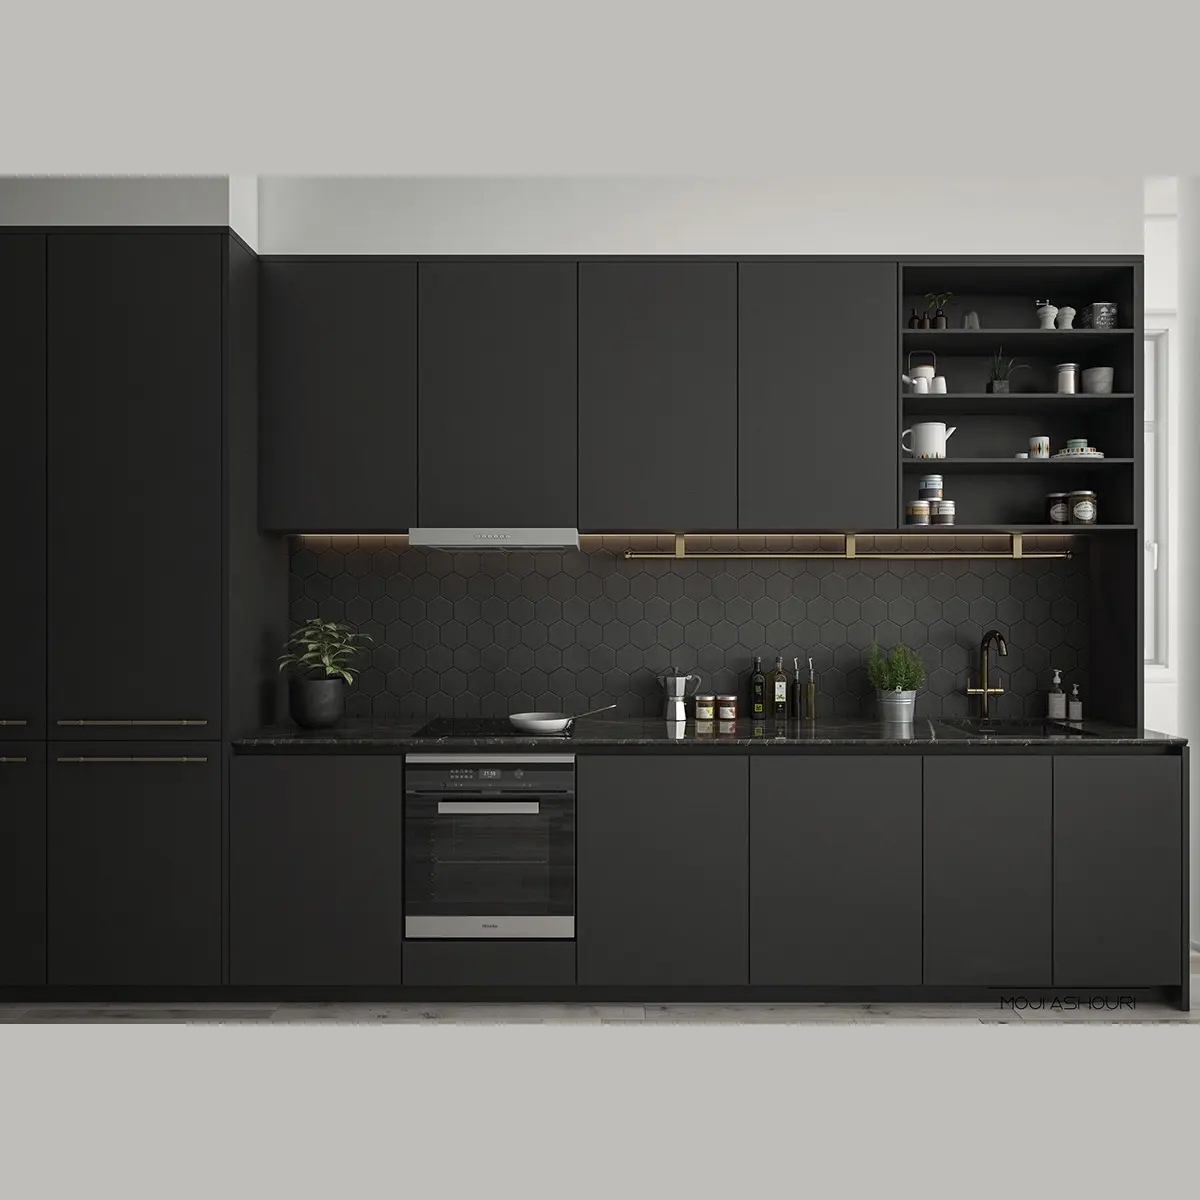 Modern luxury solid wood designs modular kitchen cabinets furniture foshan manufacturers